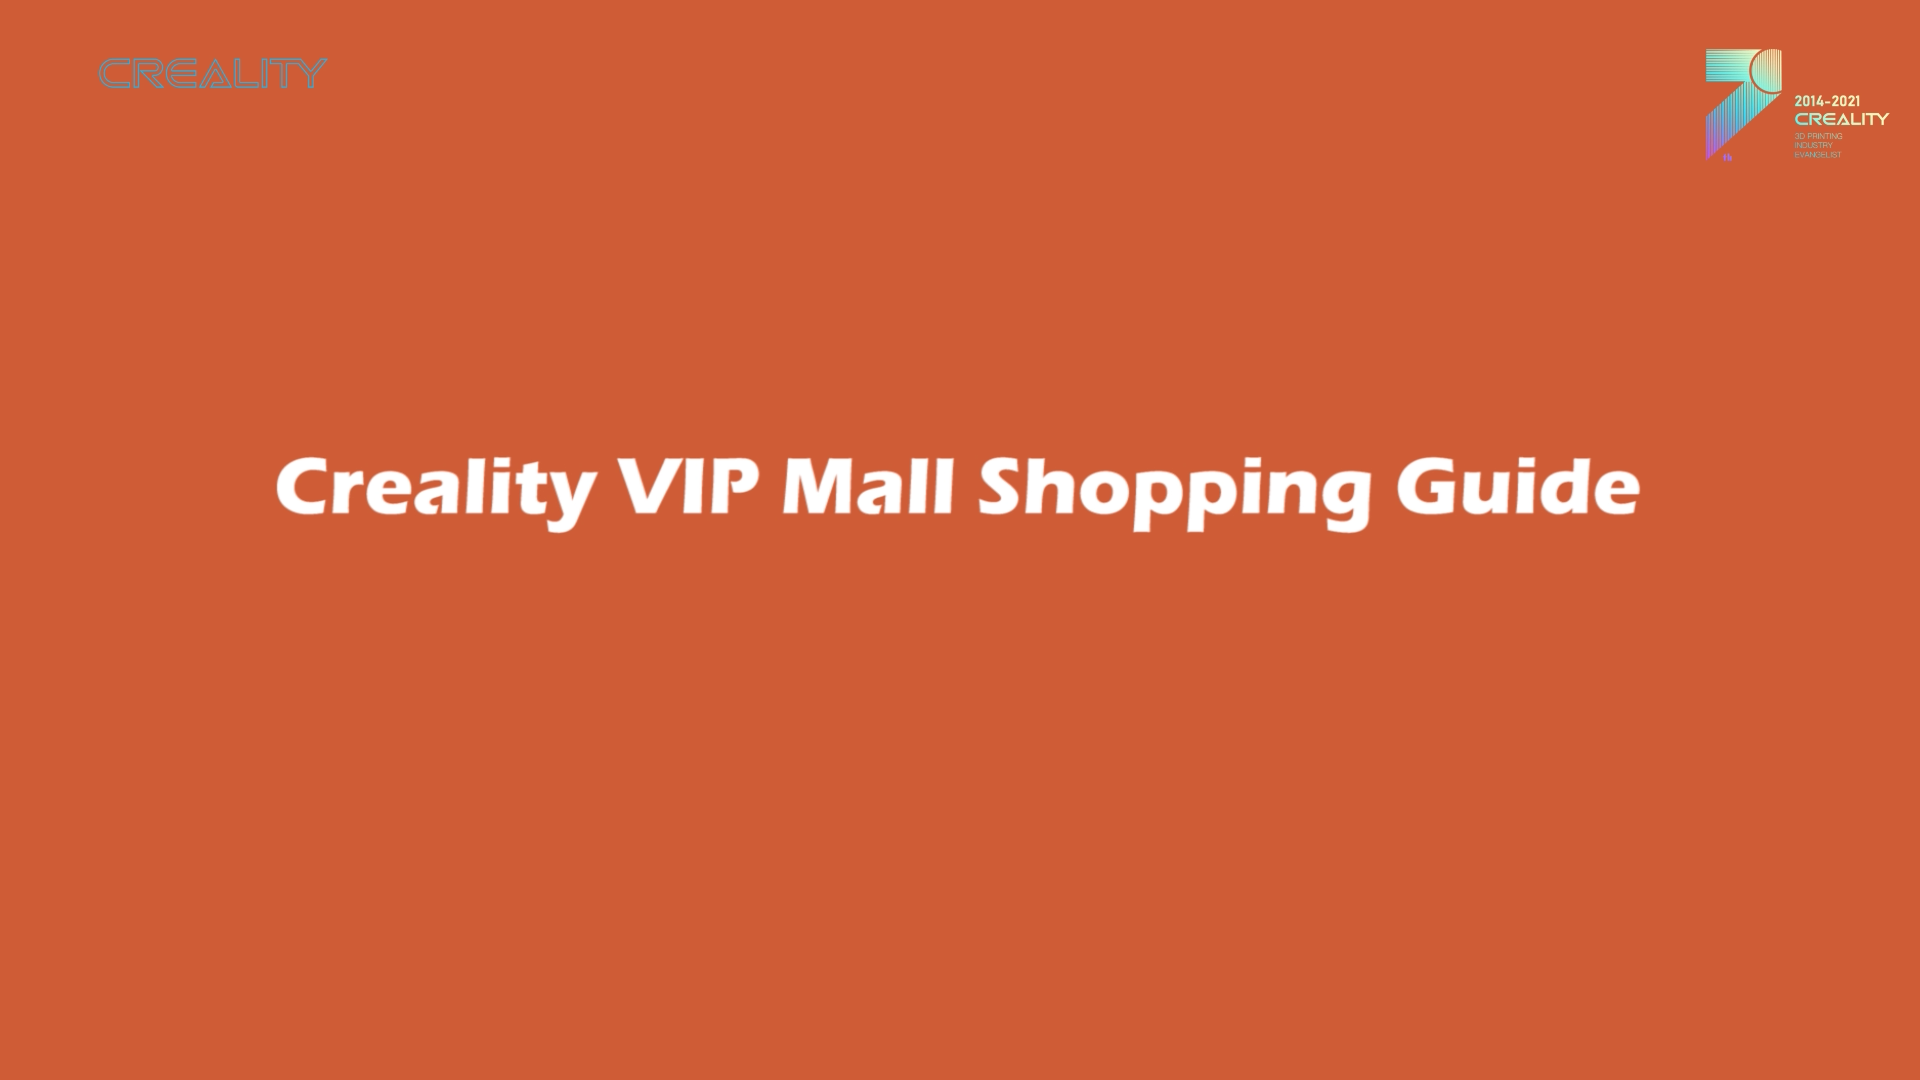 Creality VIP Mall